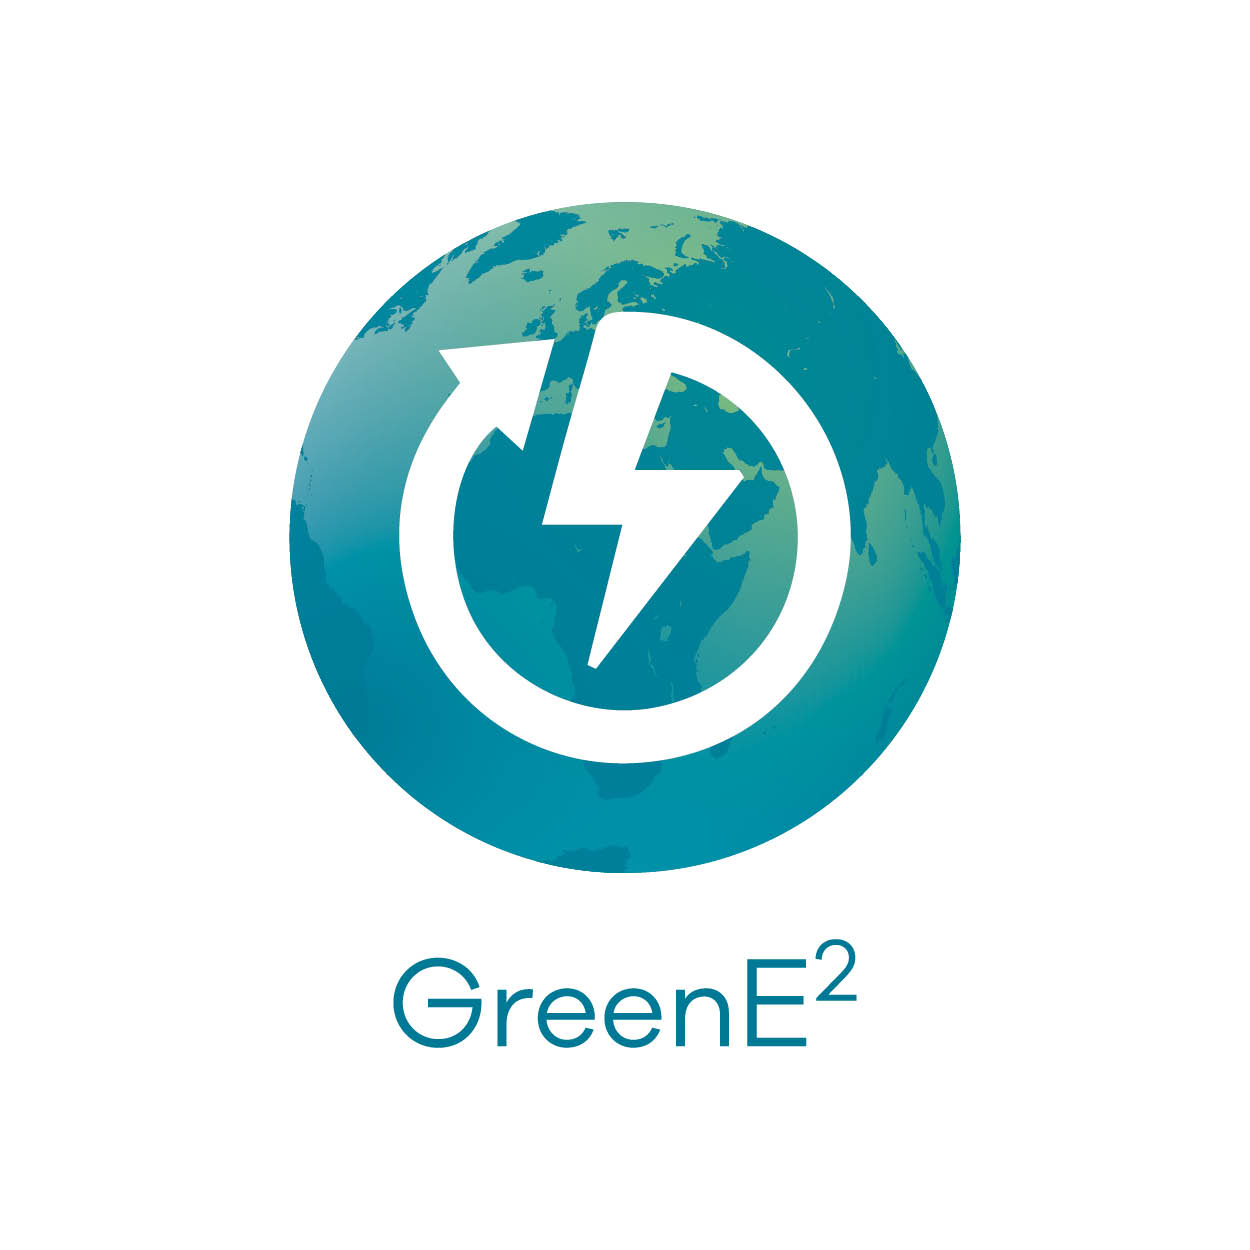 GreenE2 logo